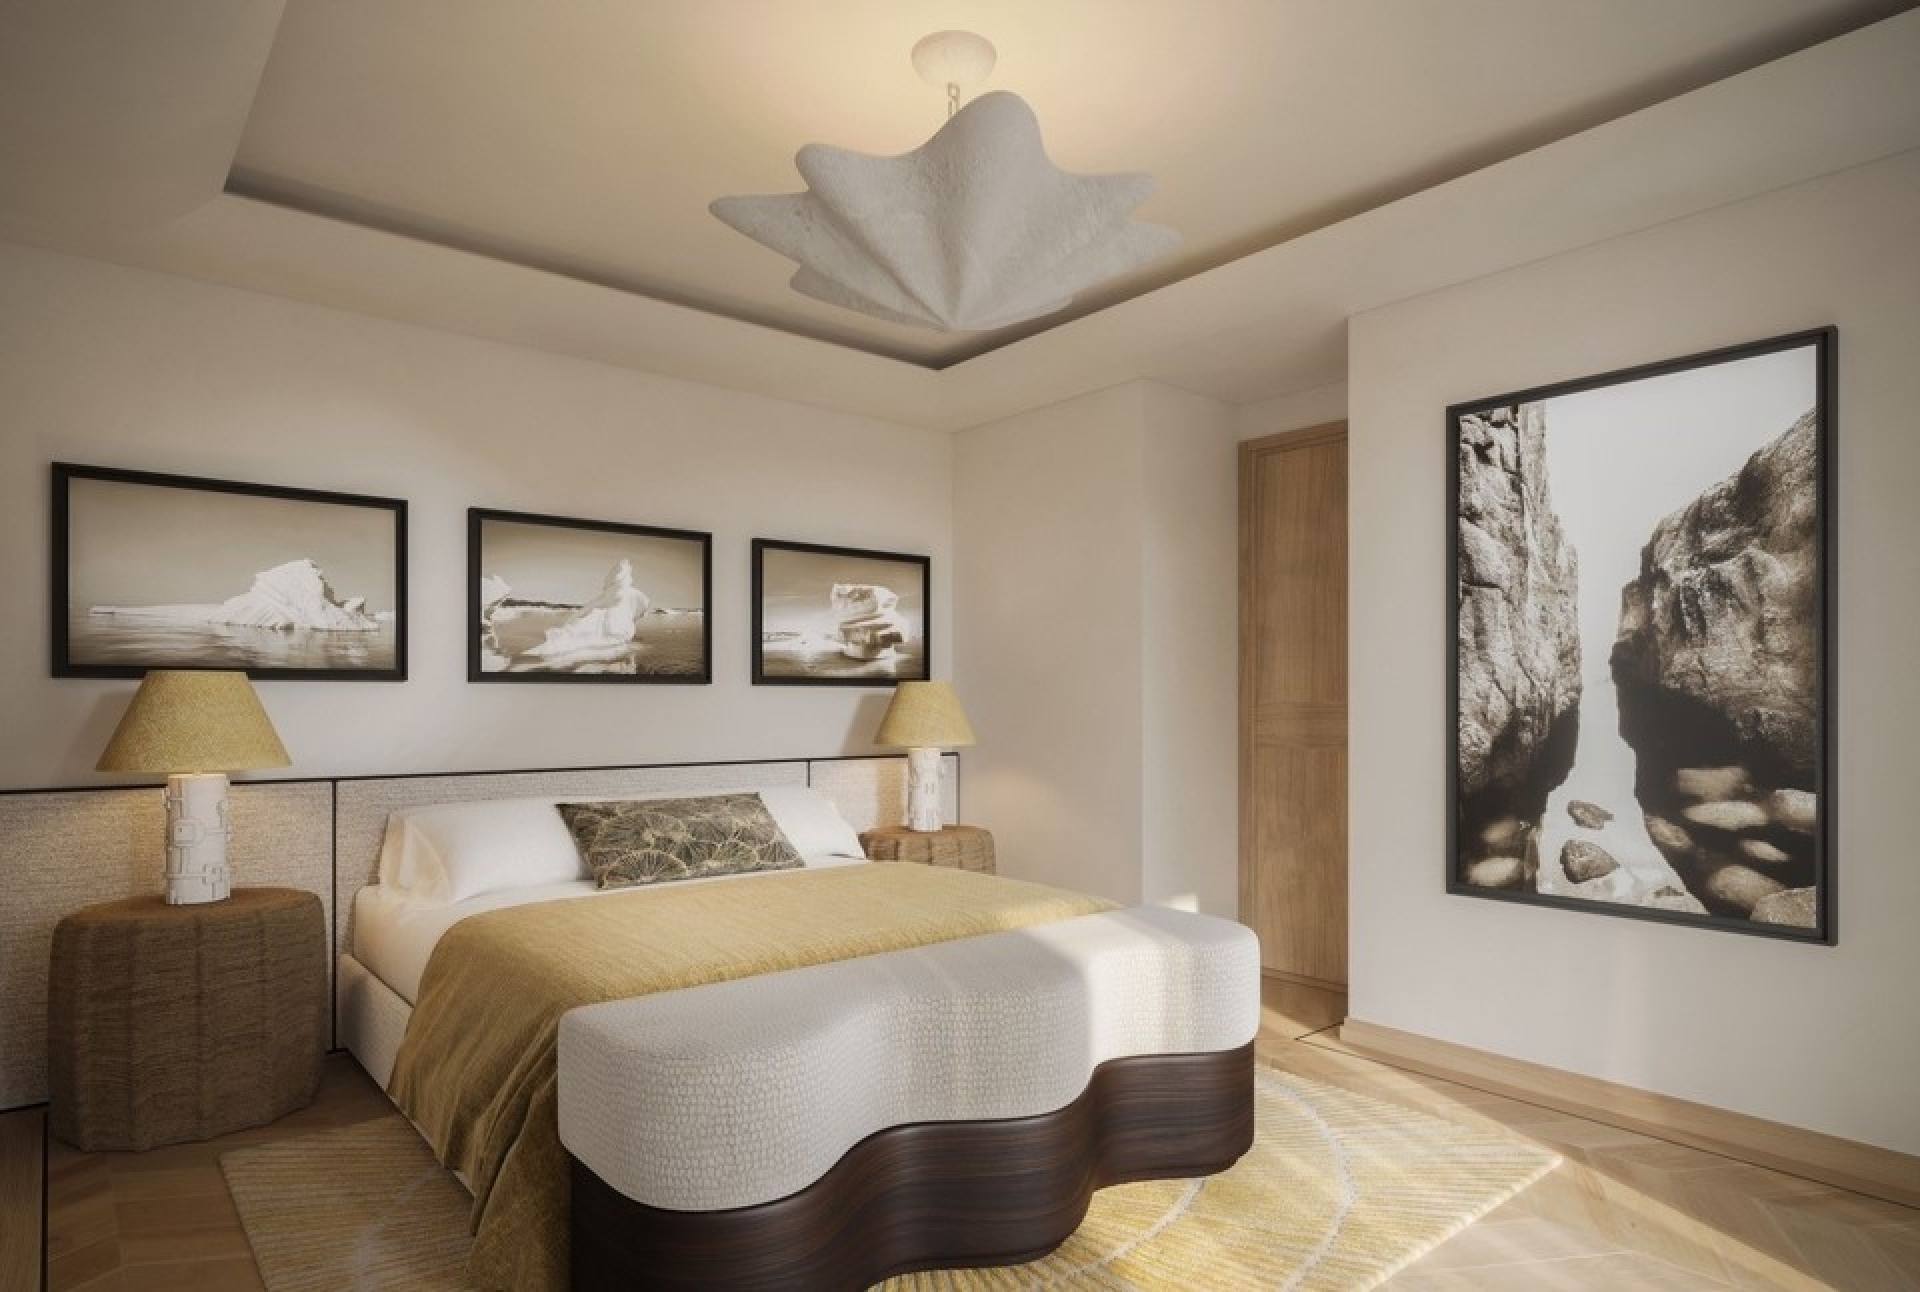 Dotta 6+ rooms apartment for sale - CARAVELLES - Port - Monaco - imgcaravelles